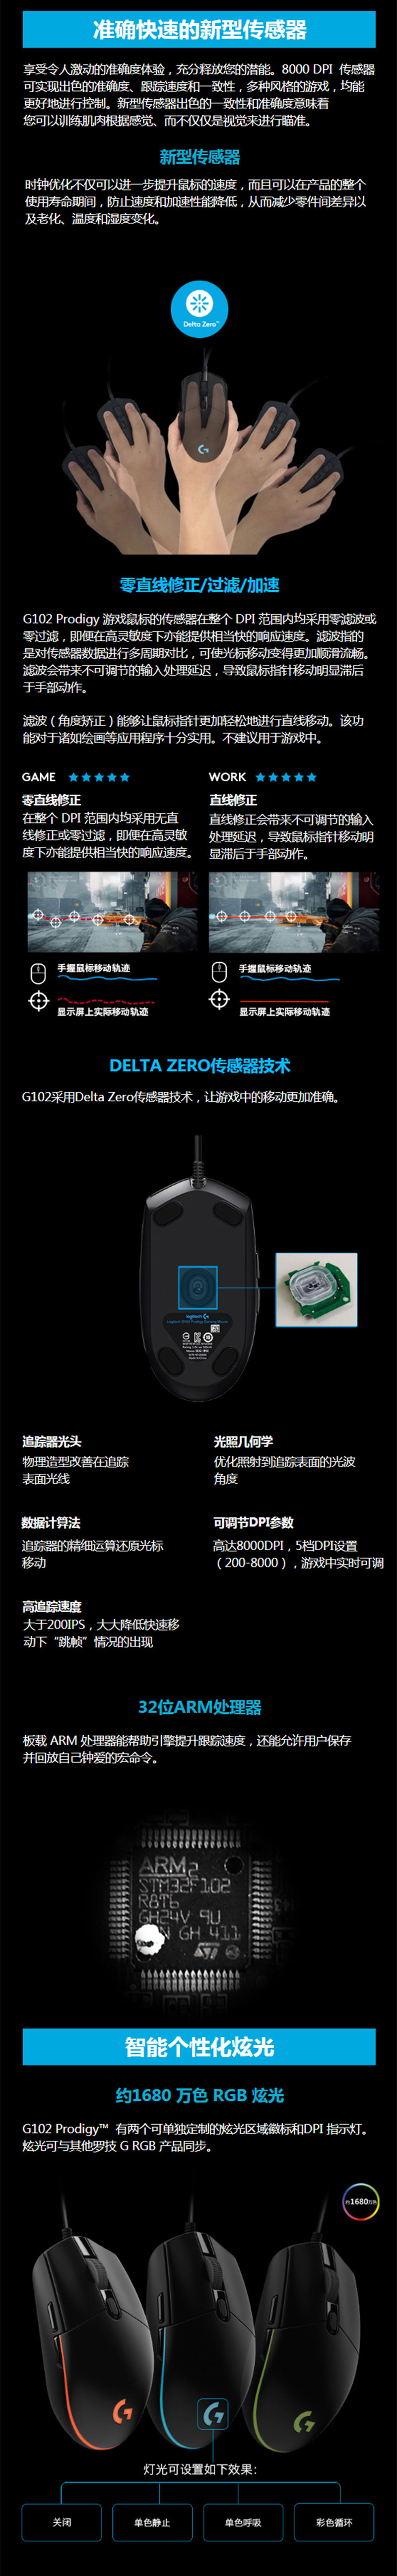 G102 Prodigy游戏鼠标